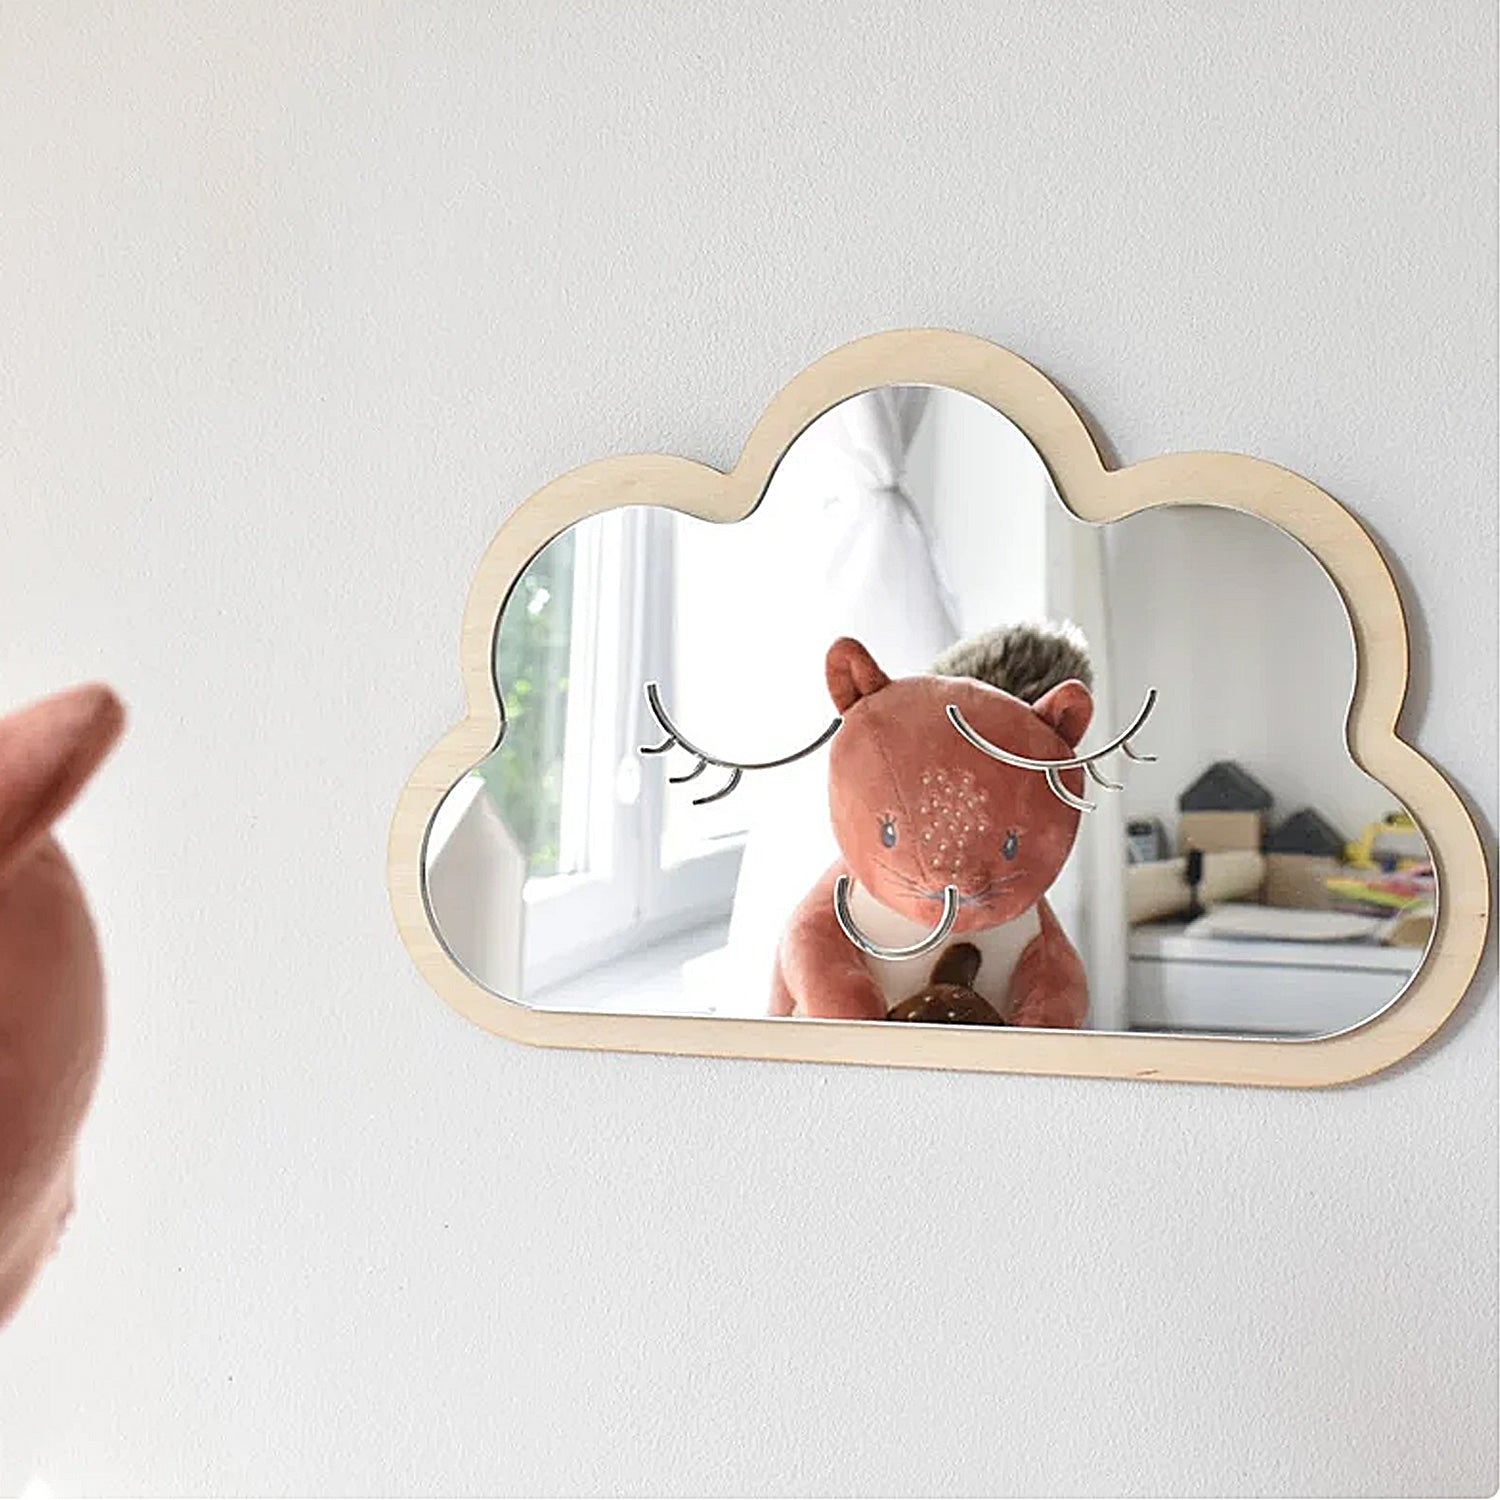 Specchio Nuvola specchio infrangibile legno decorazioni in legno per la  camera dei bambini specchio nuvola